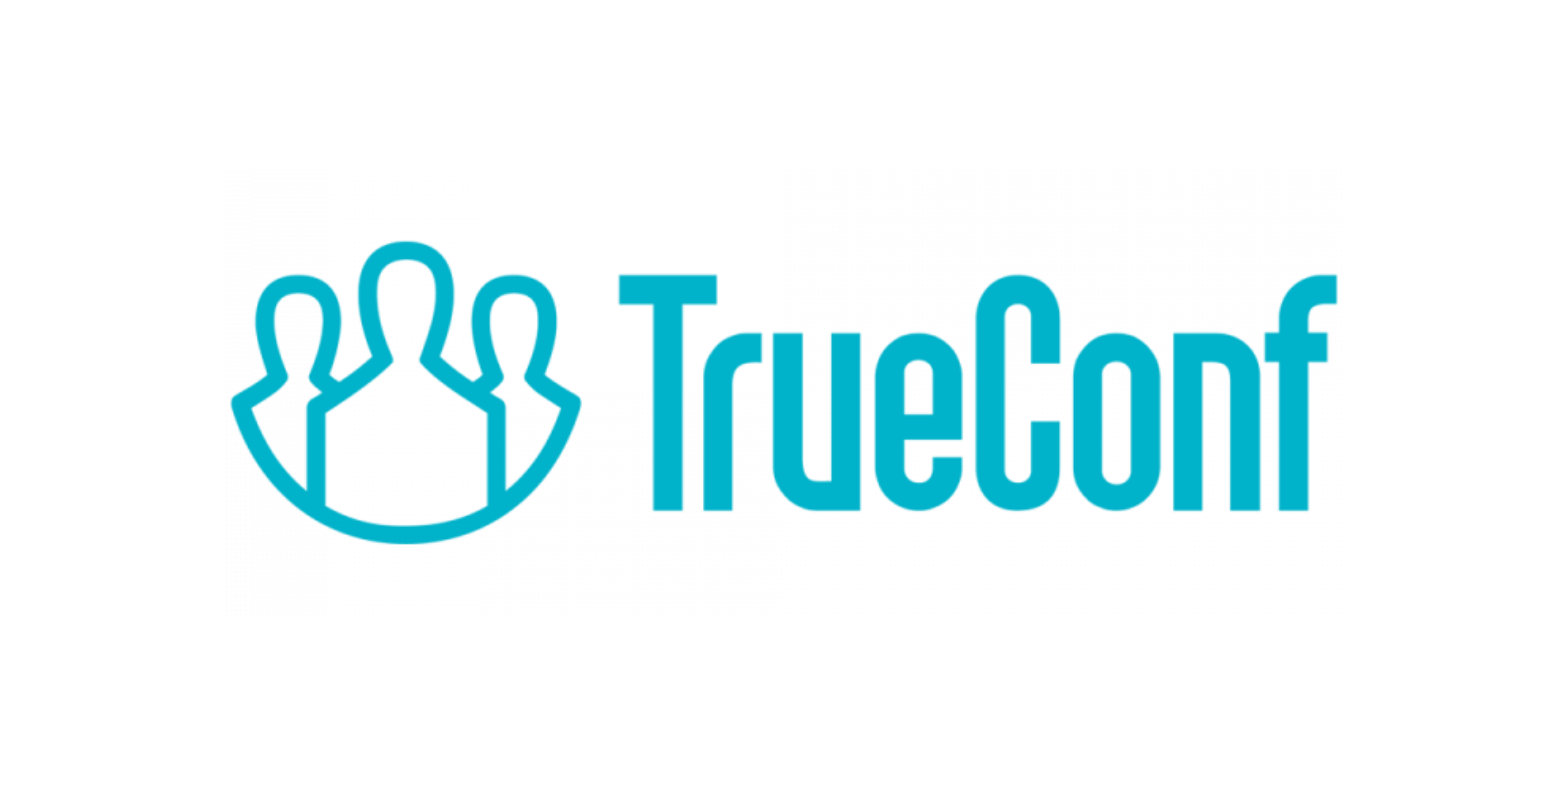 TrueConf Server Техническая поддержка на 1 год полная 100-149   онлайн-пользователей